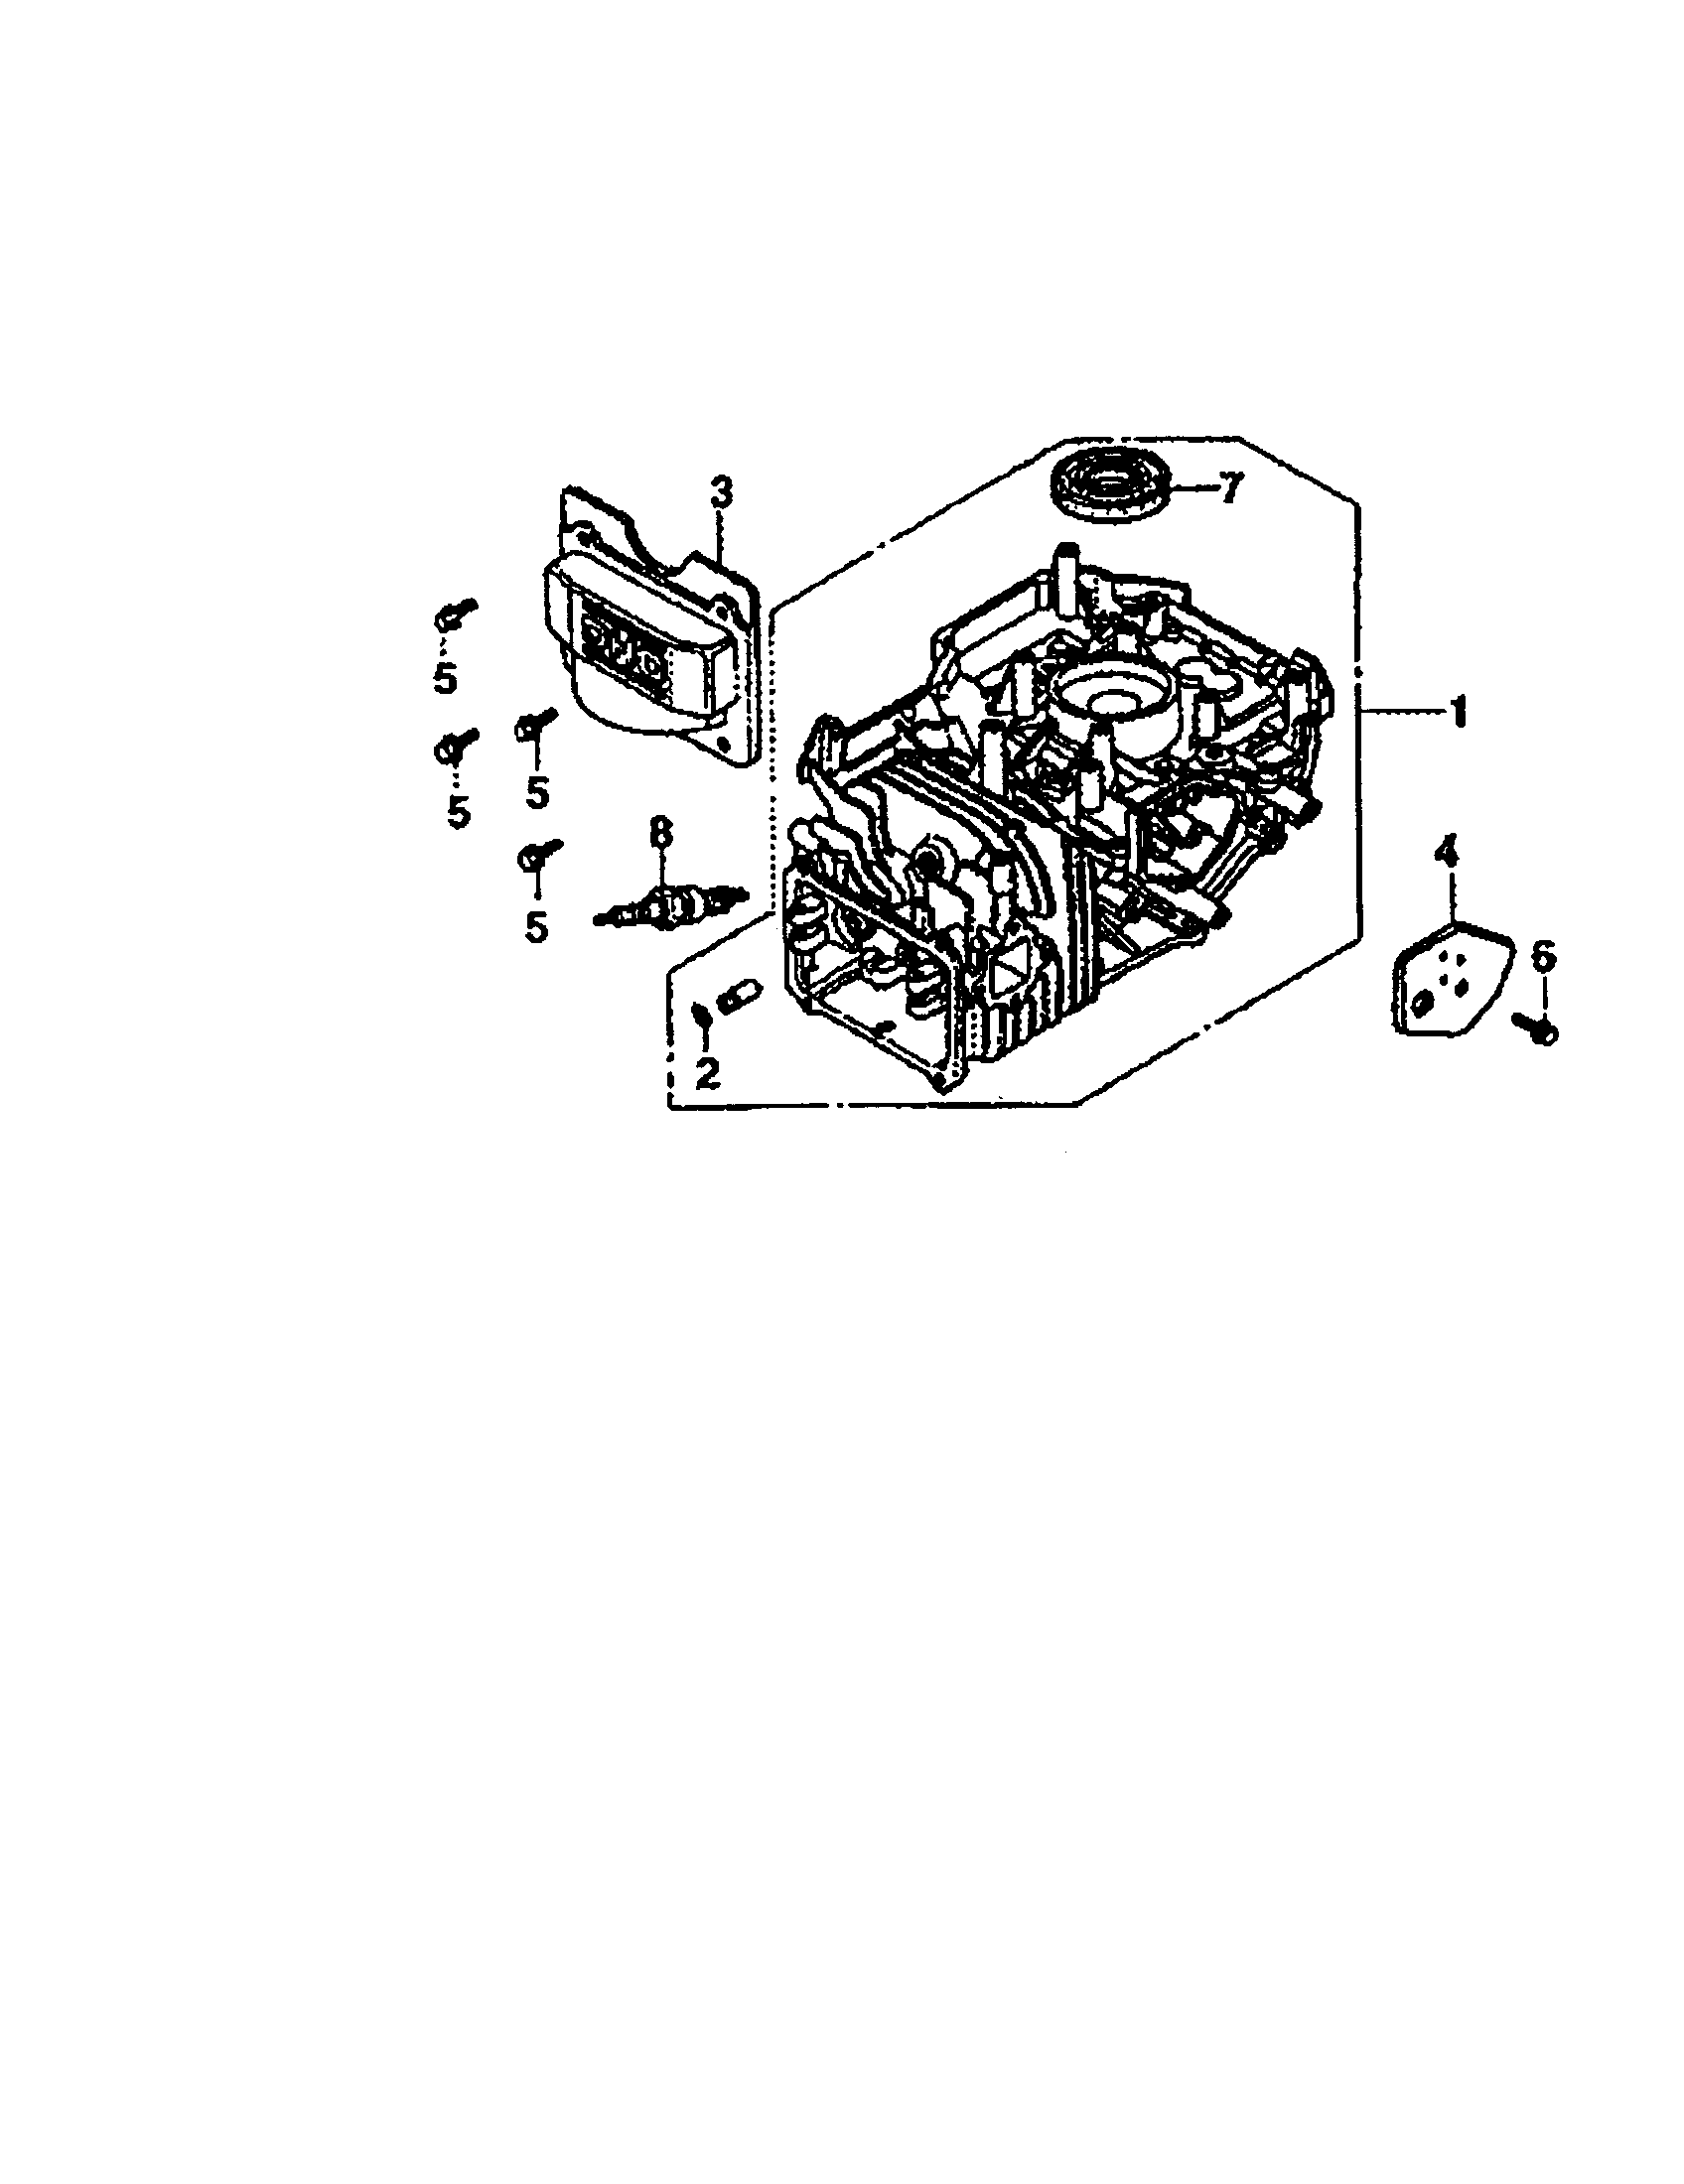 Parts for honda gcv160 engine #7